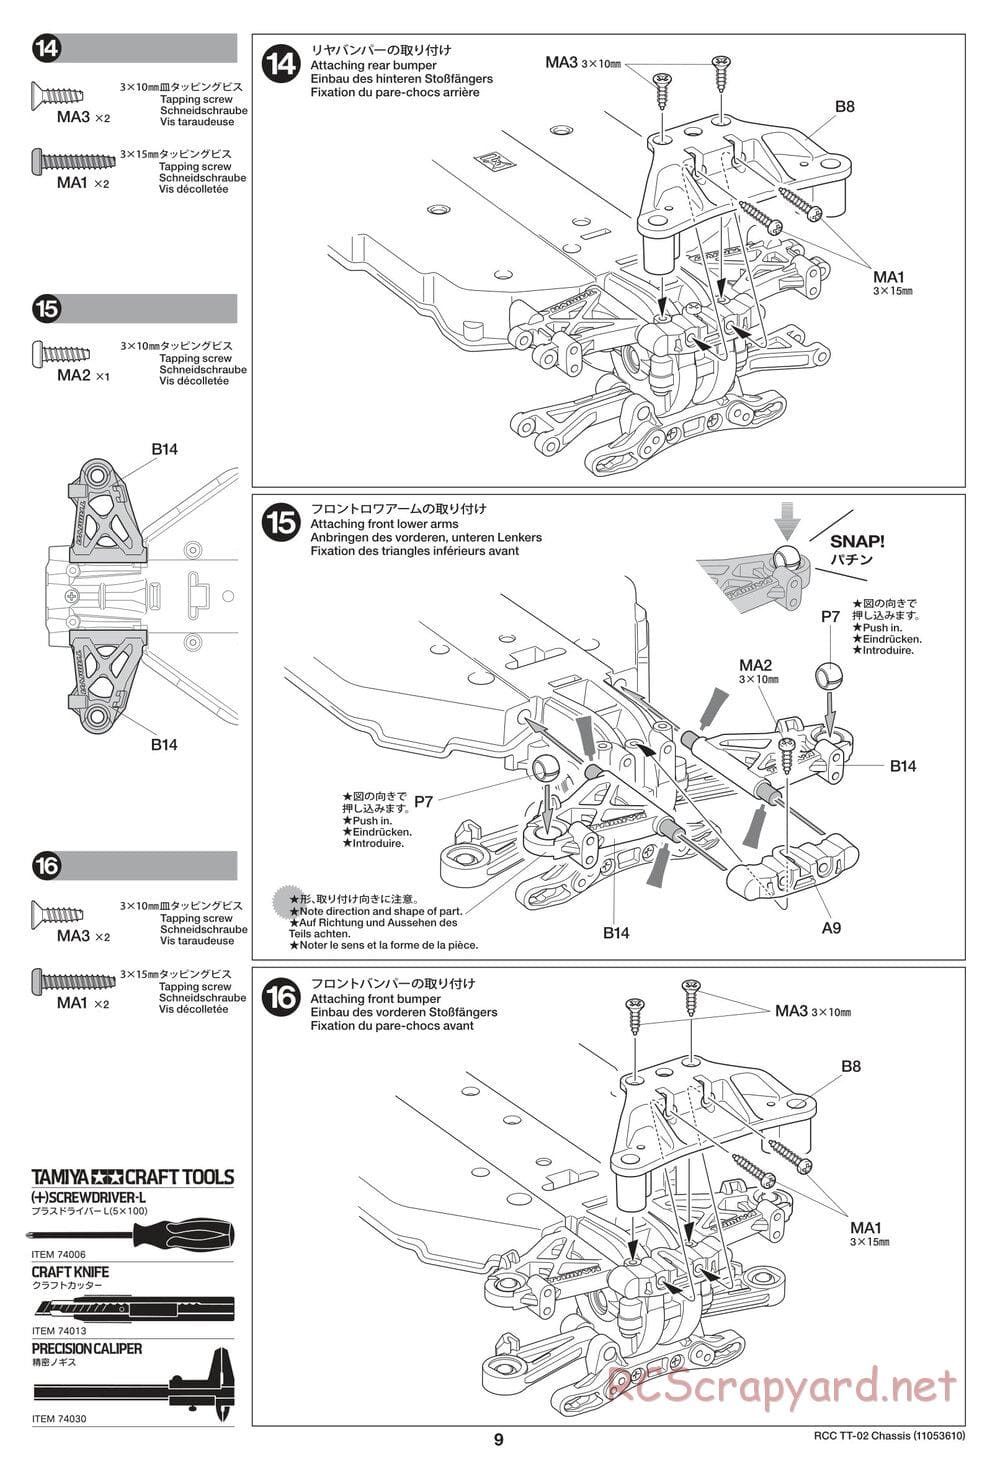 Tamiya - TT-02 Chassis - Manual - Page 9